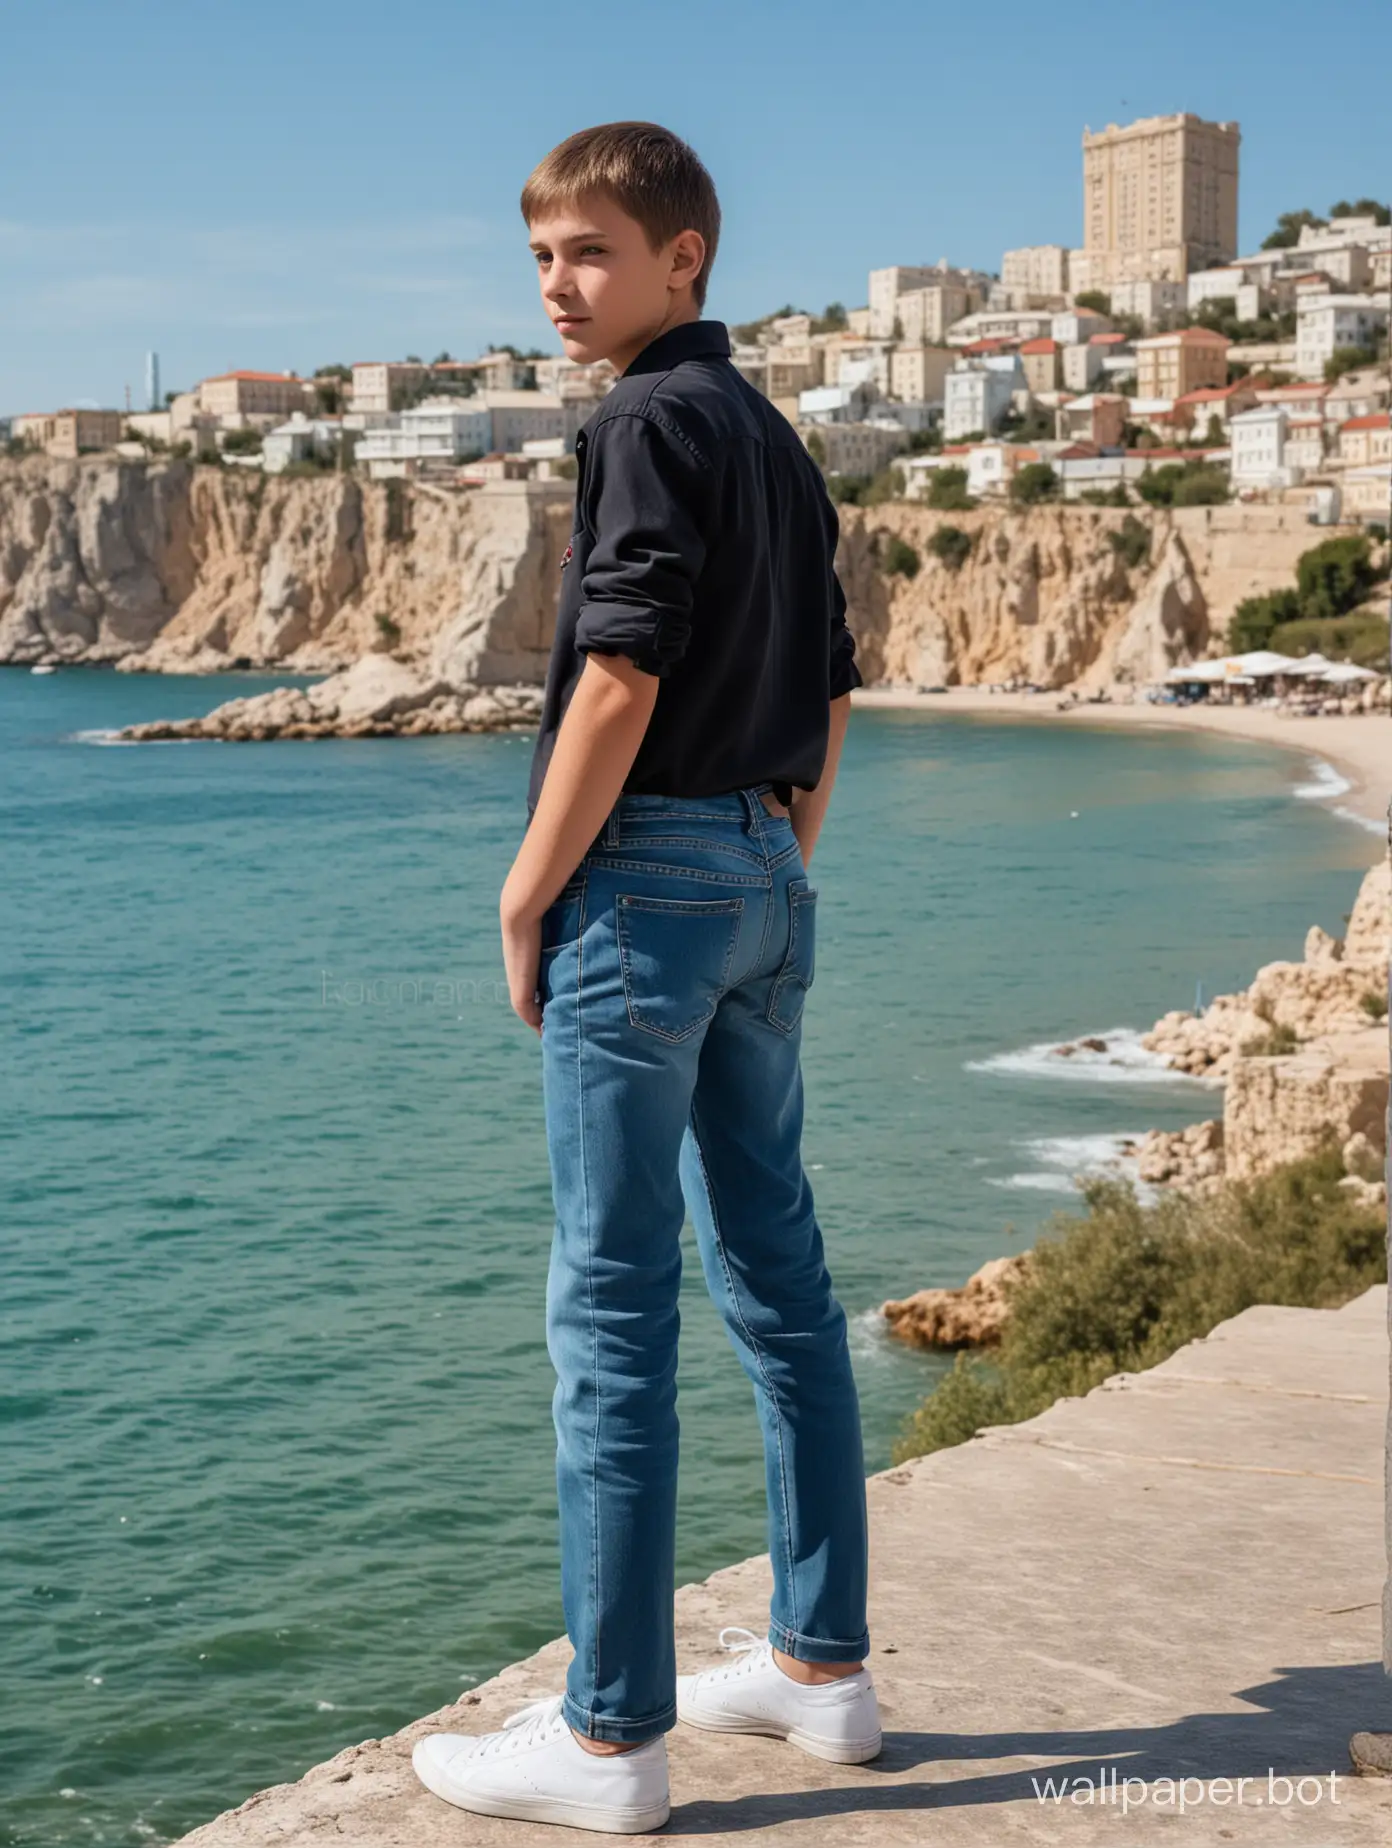 русский школьник 13 лет в Крыму на фоне моря, в полный рост, динамичные позы, люди и строения на заднем плане, обтягивающие джинсы, попка, вид сзади